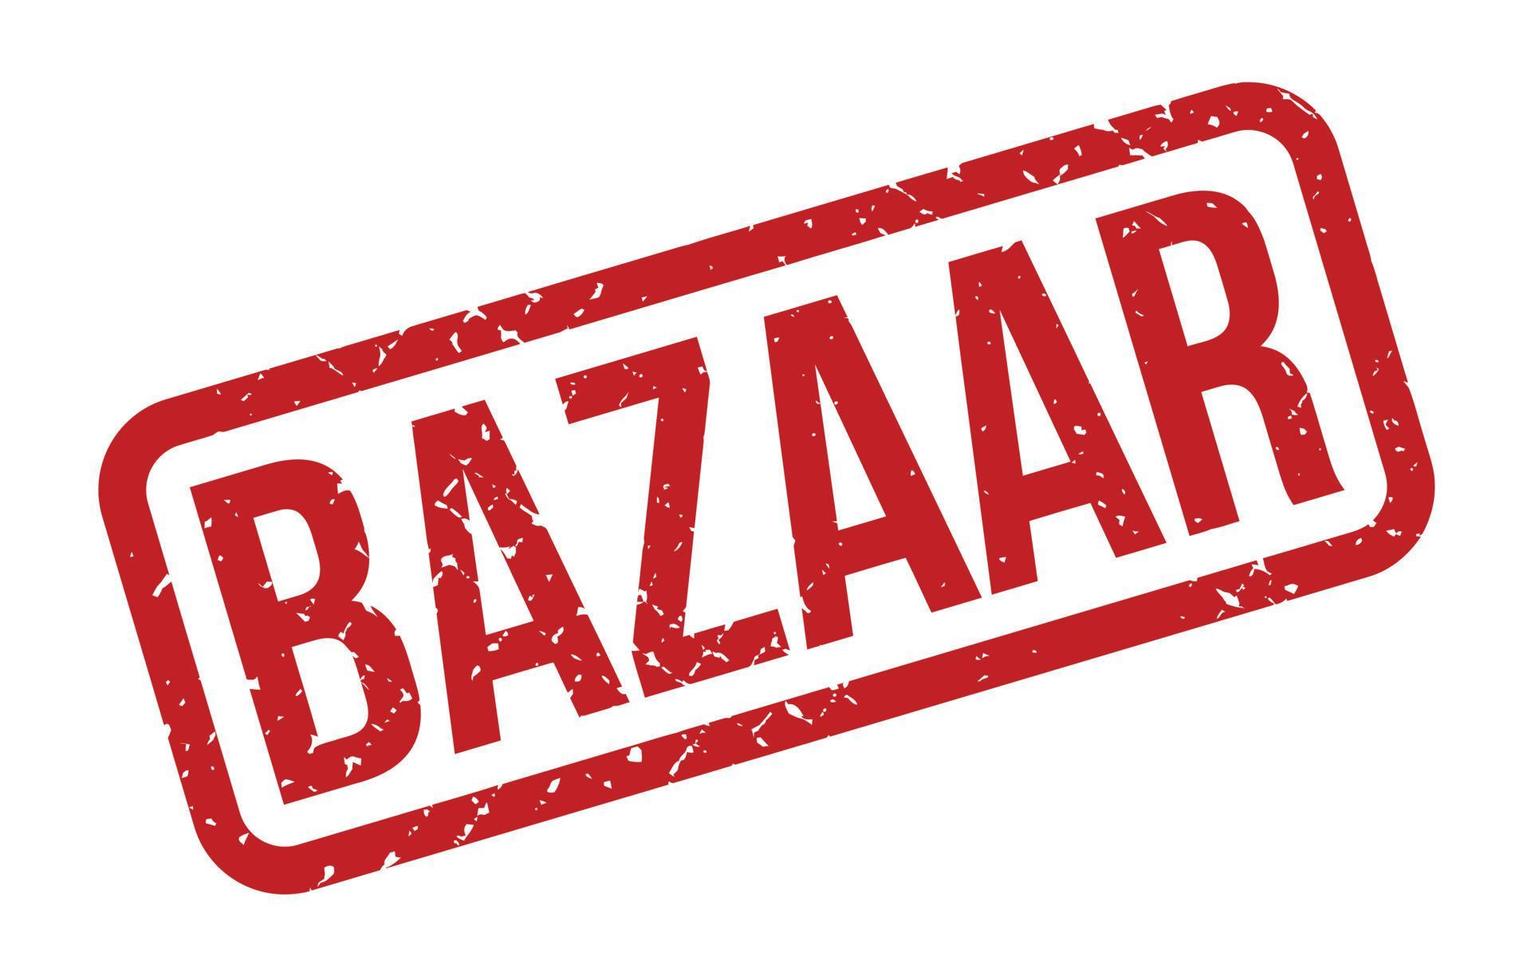 carimbo de borracha do bazar. ilustração em vetor selo grunge de borracha de bazar vermelho - vetorial